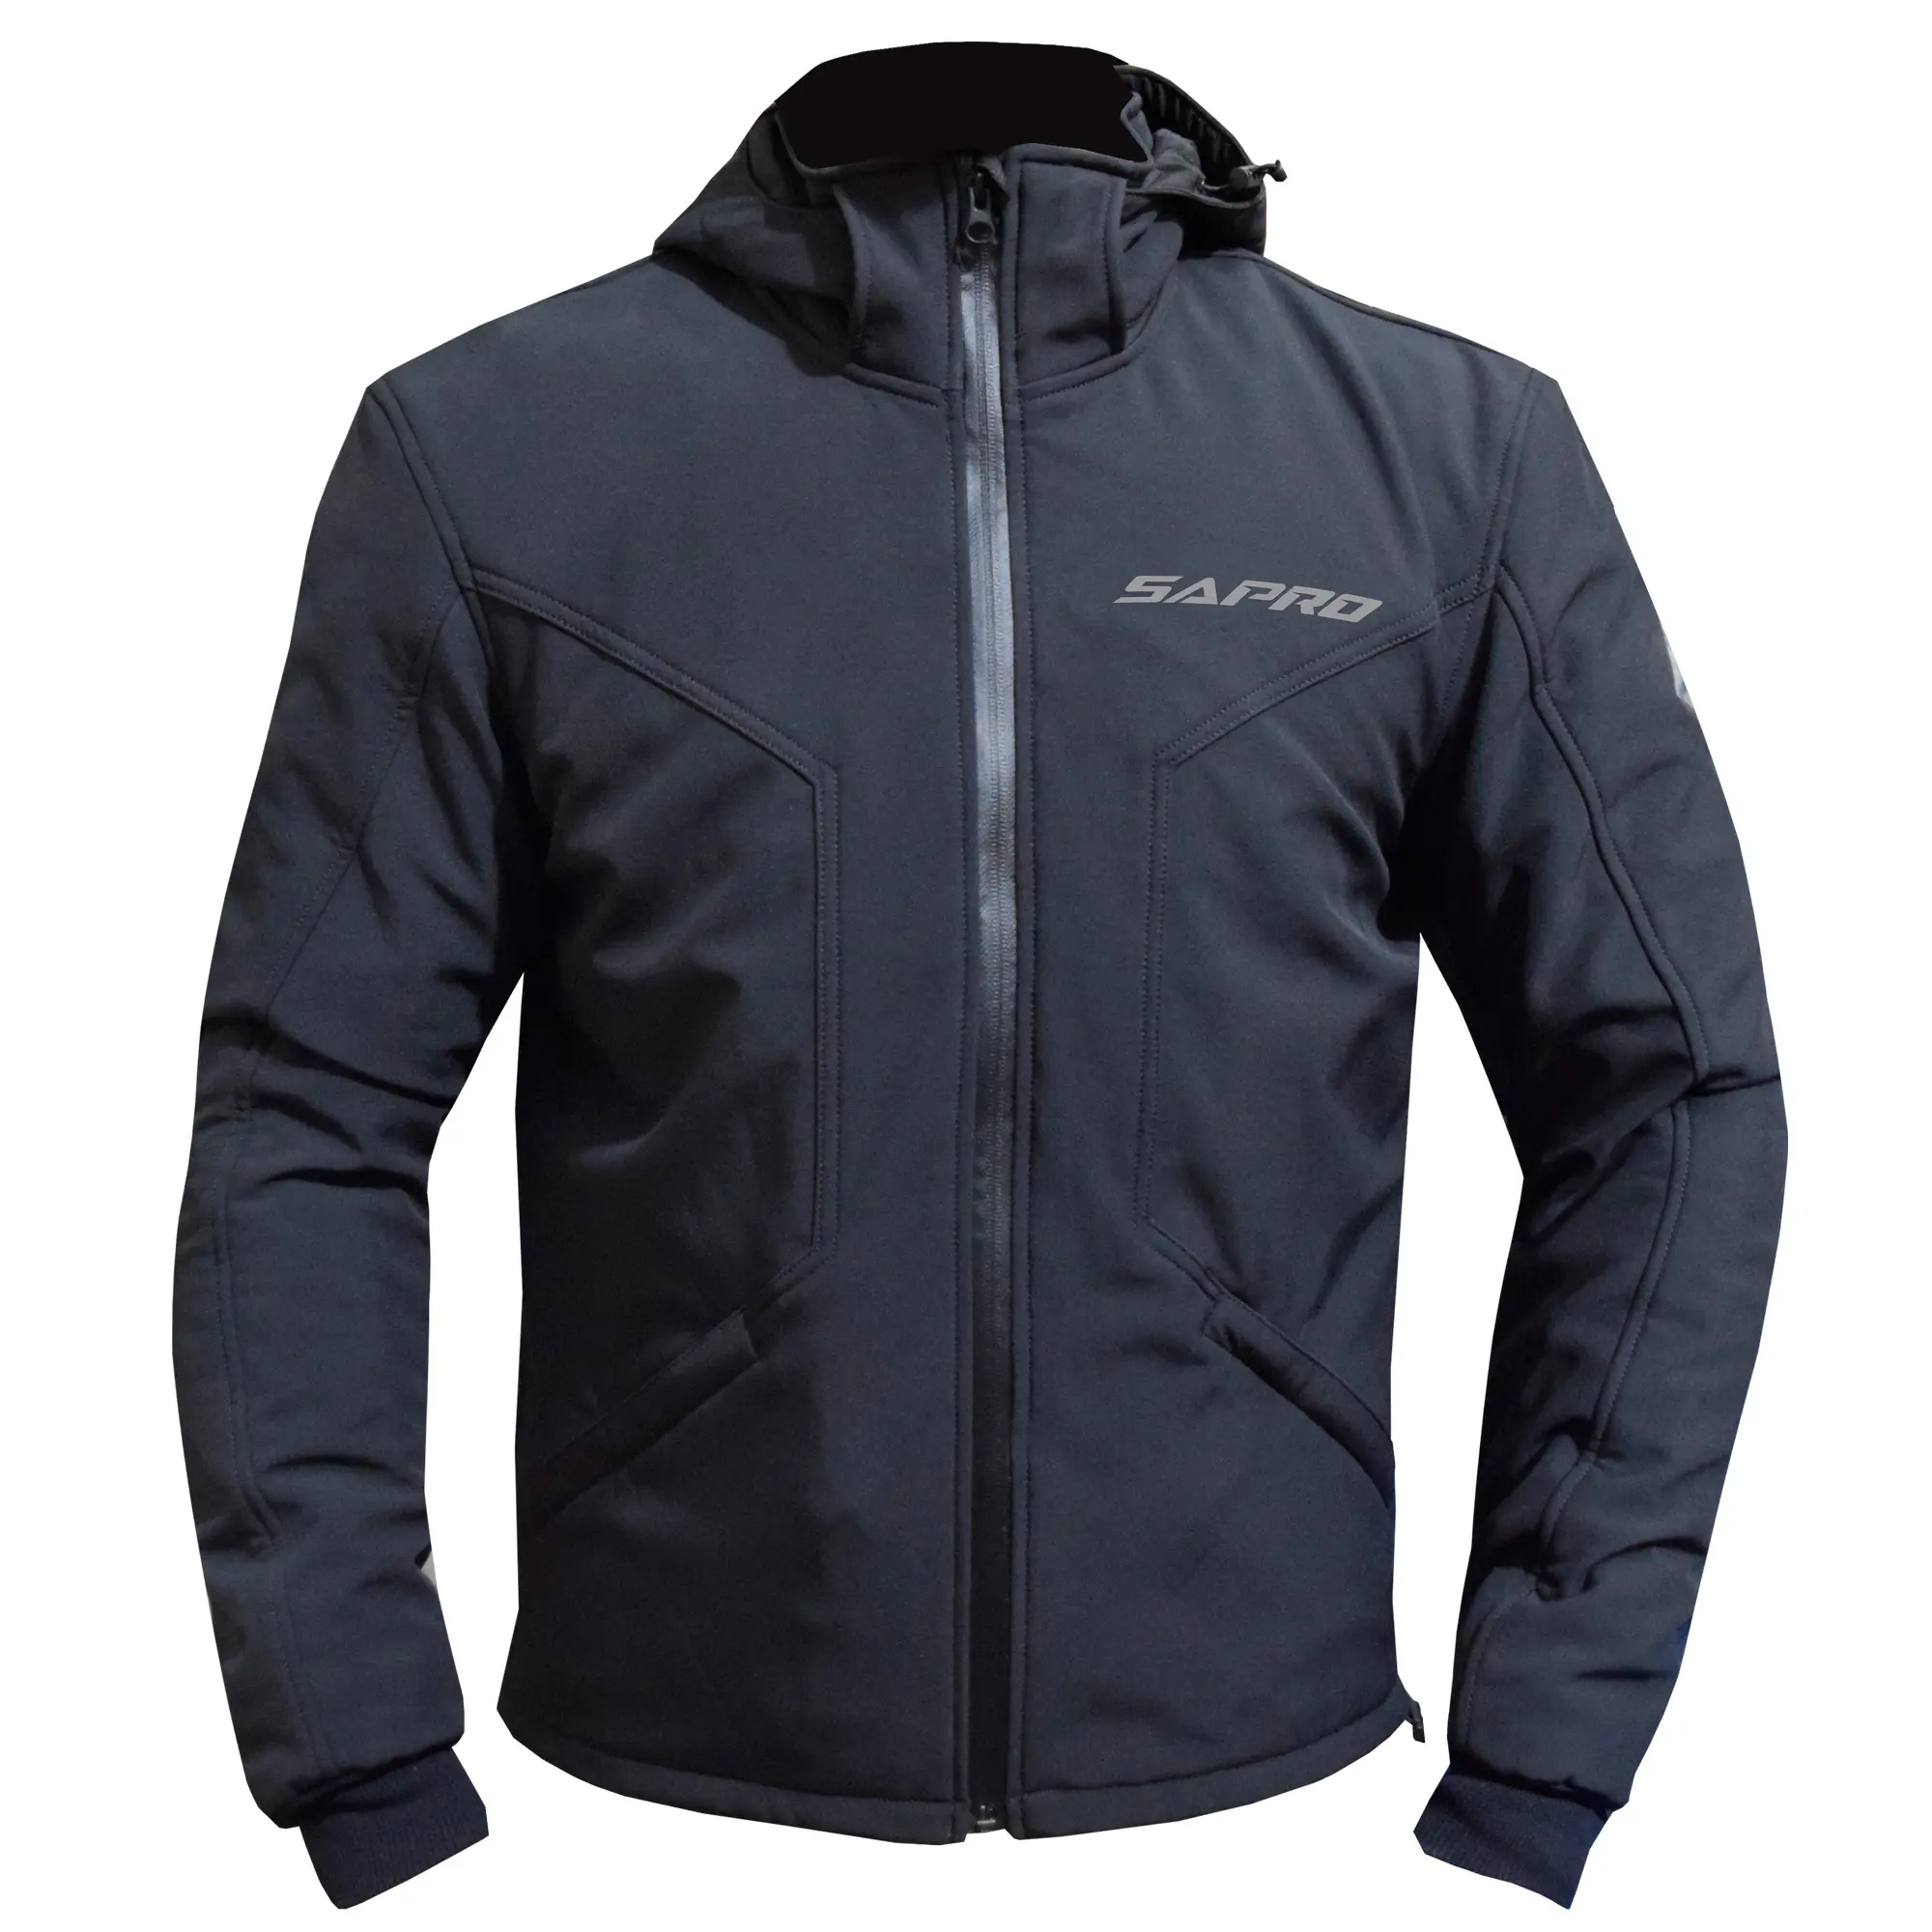 Высококачественная мотоциклетная куртка с сублимационной печатью, изготовлена из водонепроницаемой и дышащей мягкой ткани